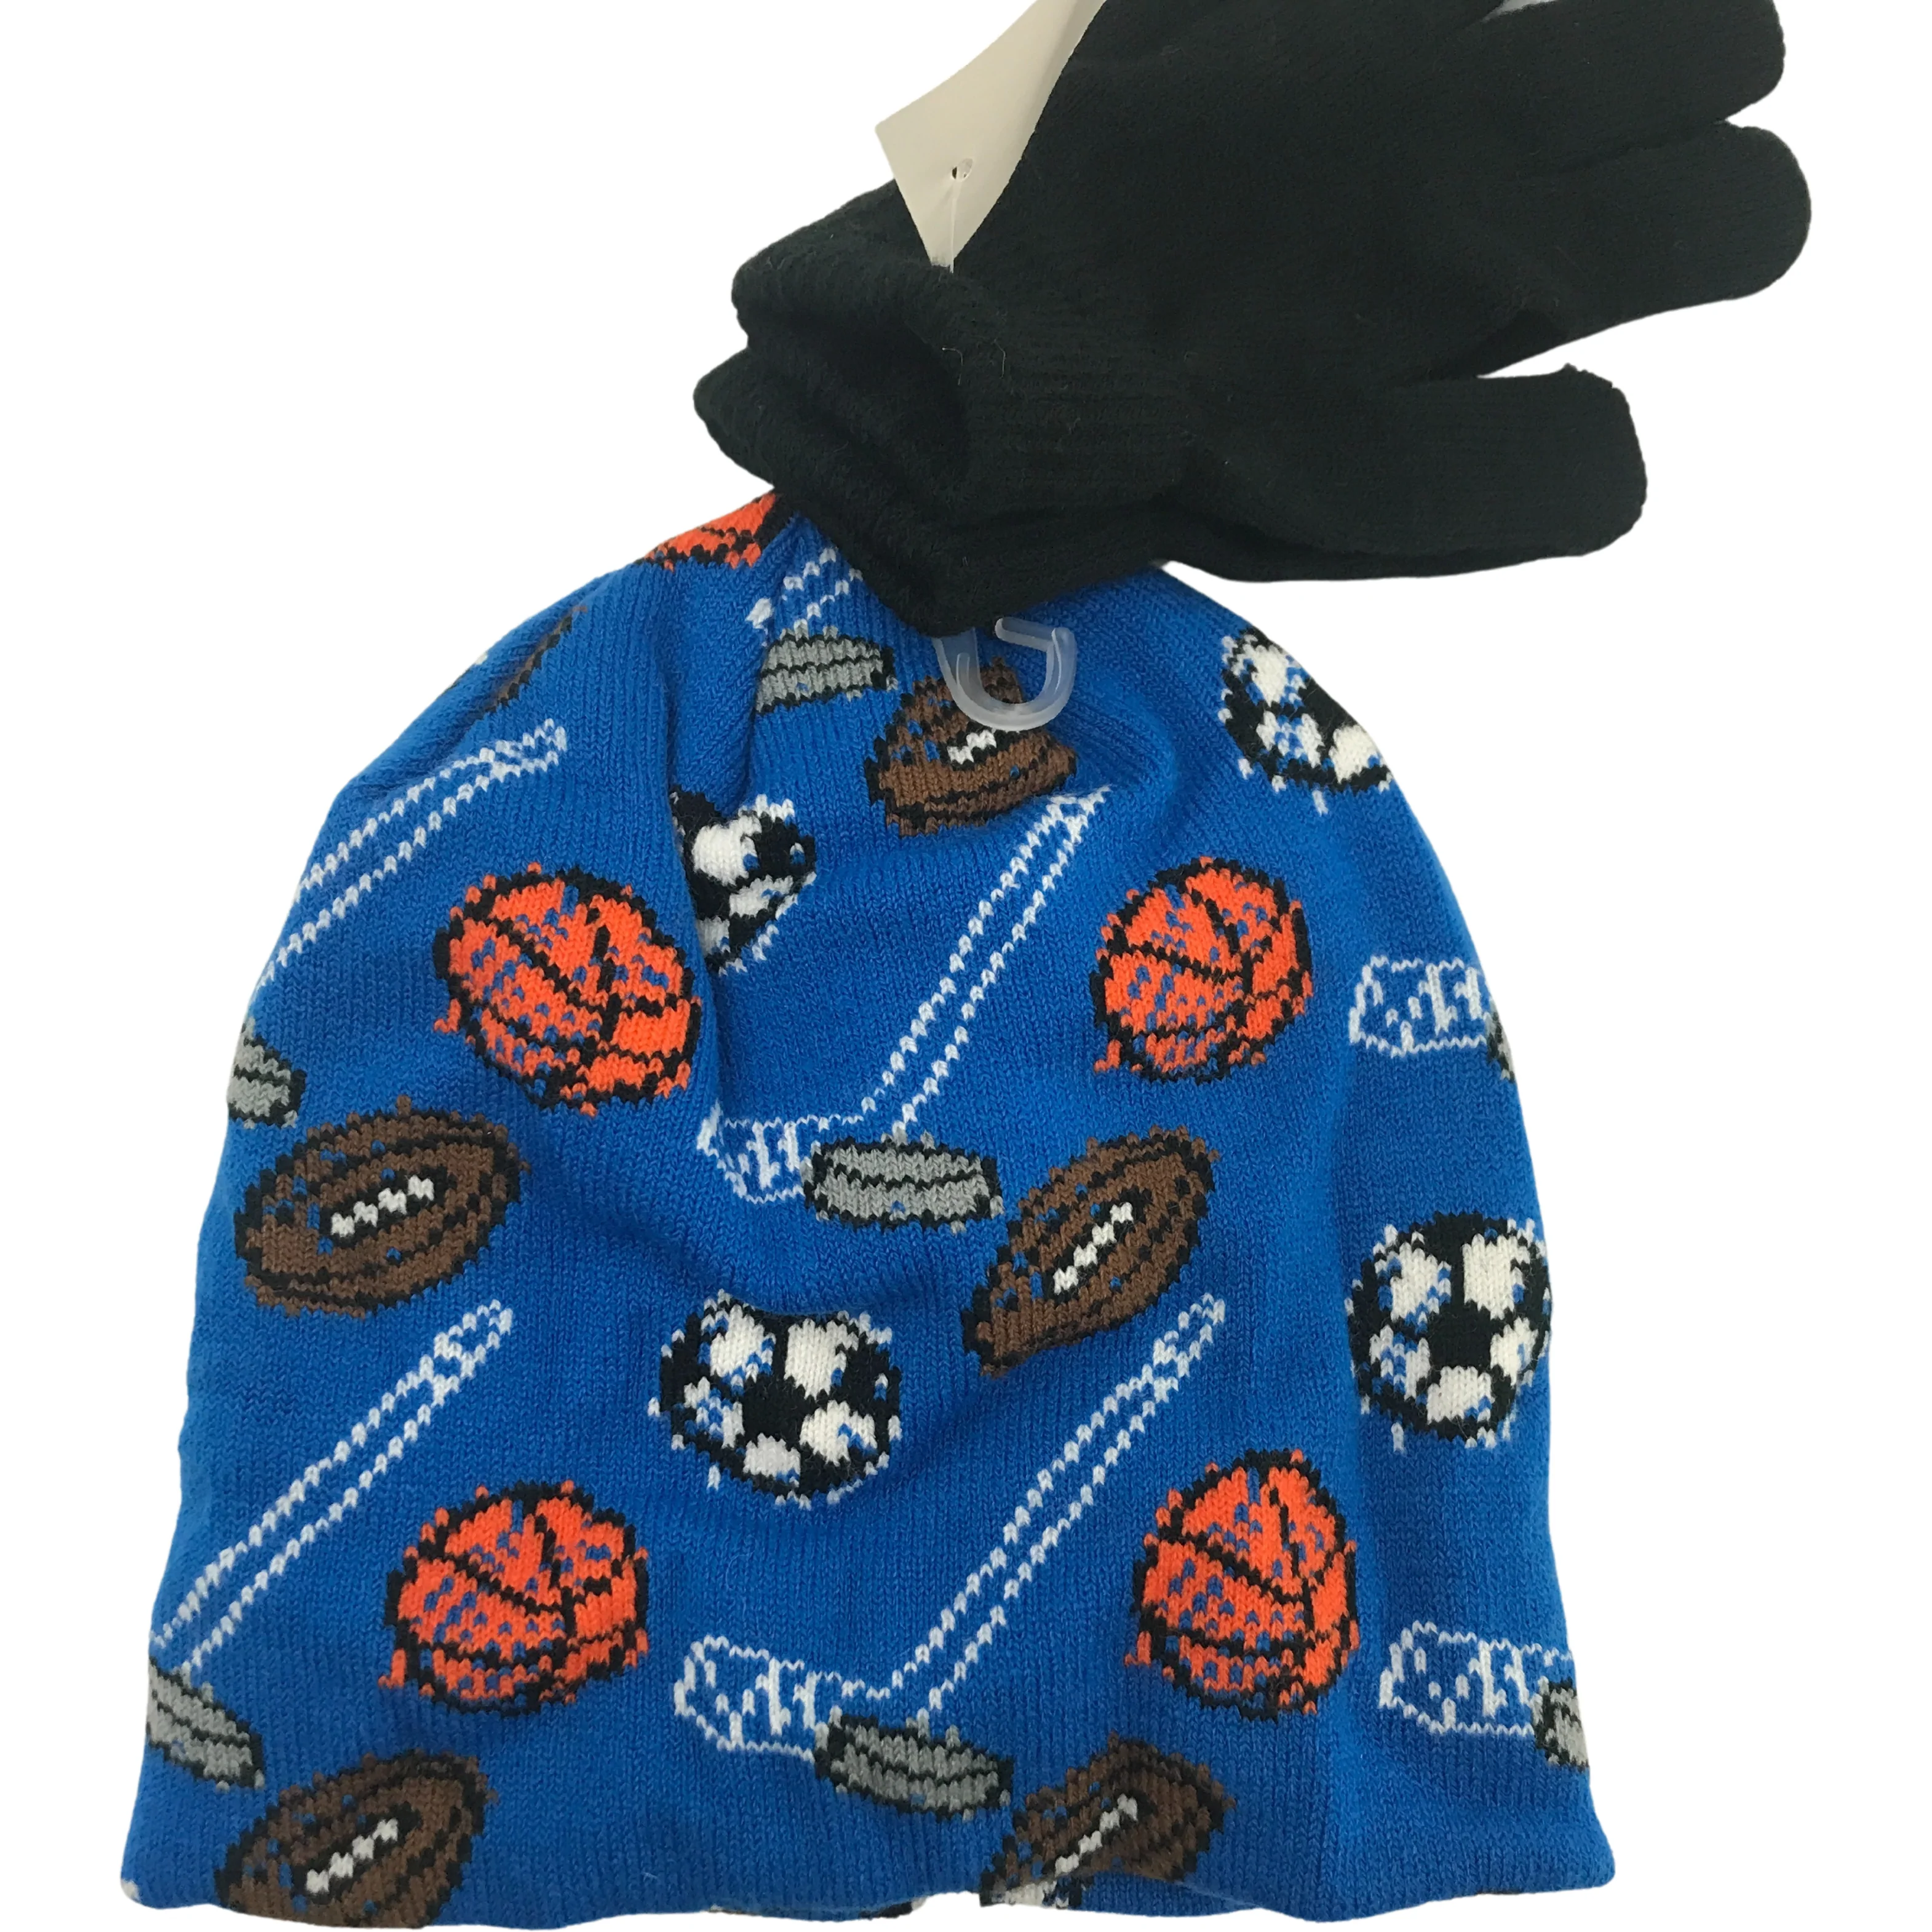 Children's Hat & Glove Set / Sports / Boy's Winter Hat / Lightweight Gloves / Size 4-7